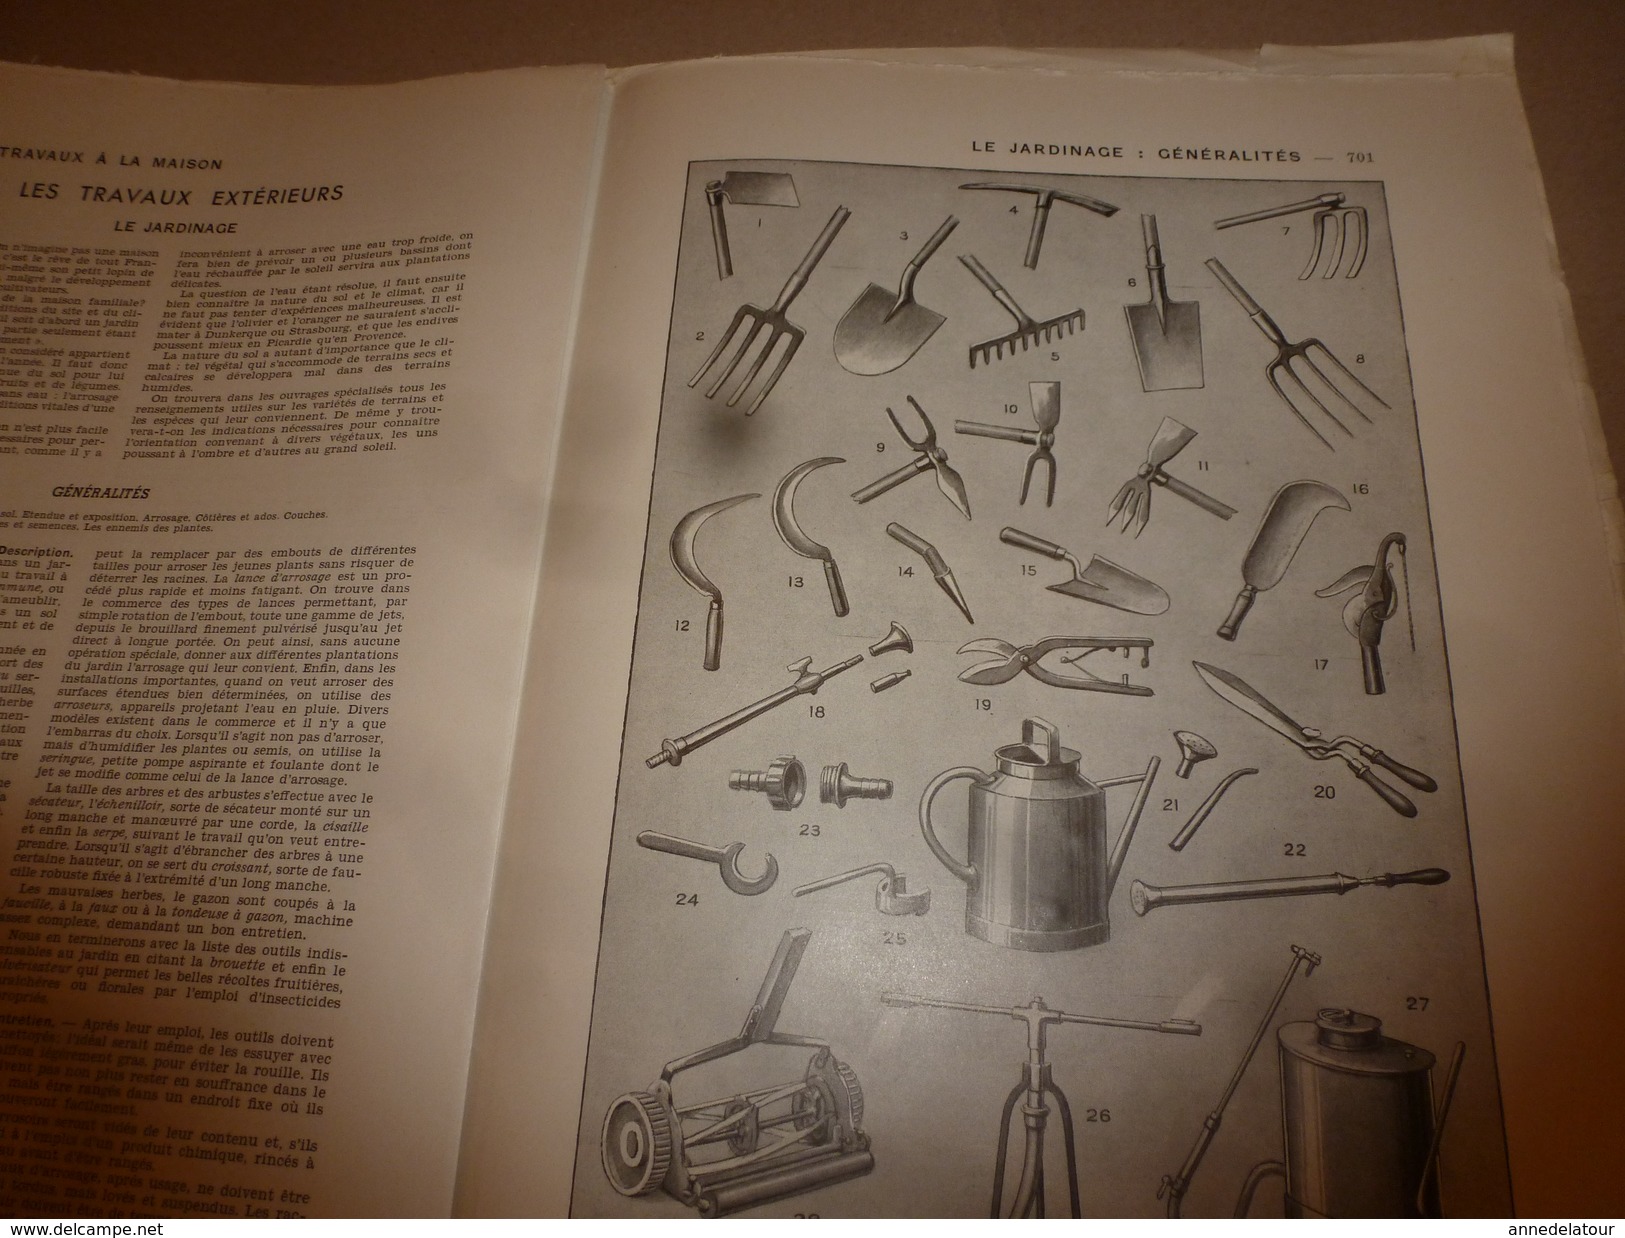 1950 ENCYCLOPEDIE FAMILIALE LAROUSSE ->Produits (ménagers, de toilette),Papiers,Encres,Timbres et Cachets; Jardinage